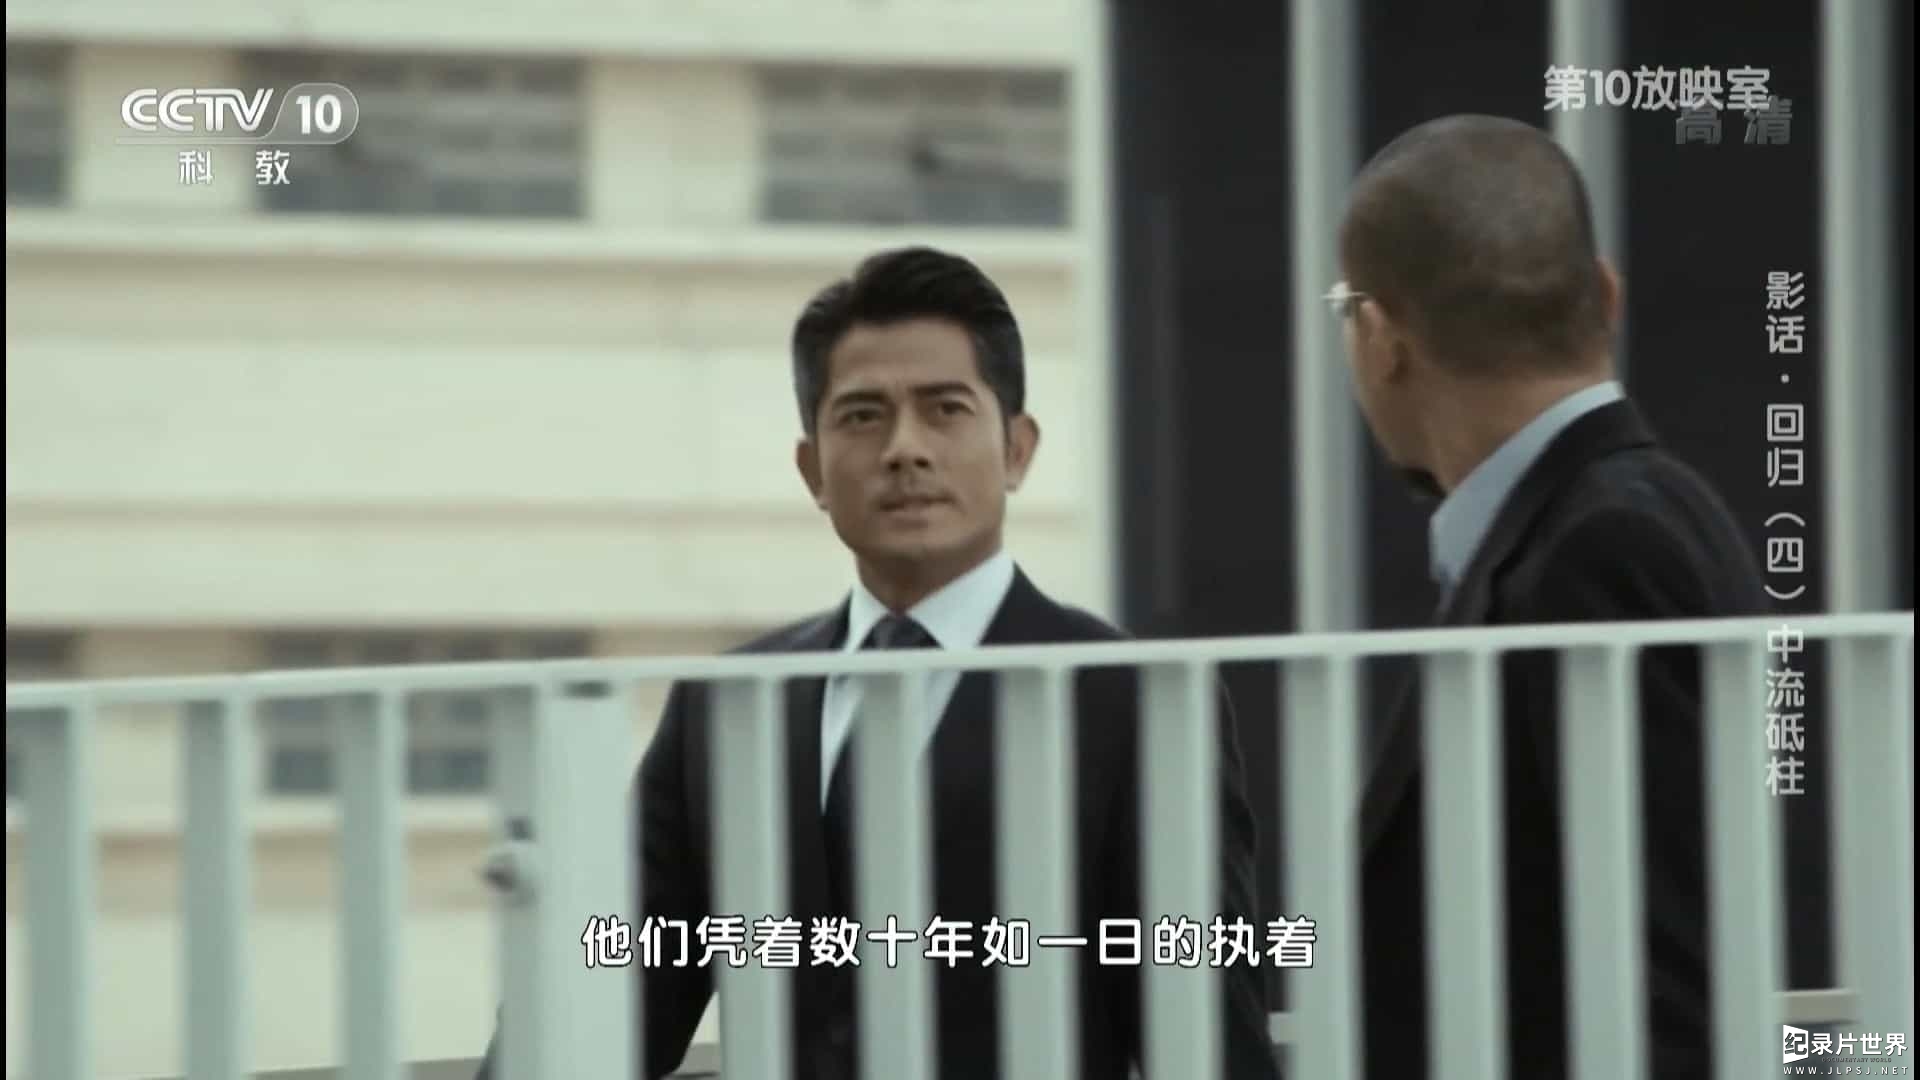  央视香港回归20周年特别节目《影话·回归》全4集